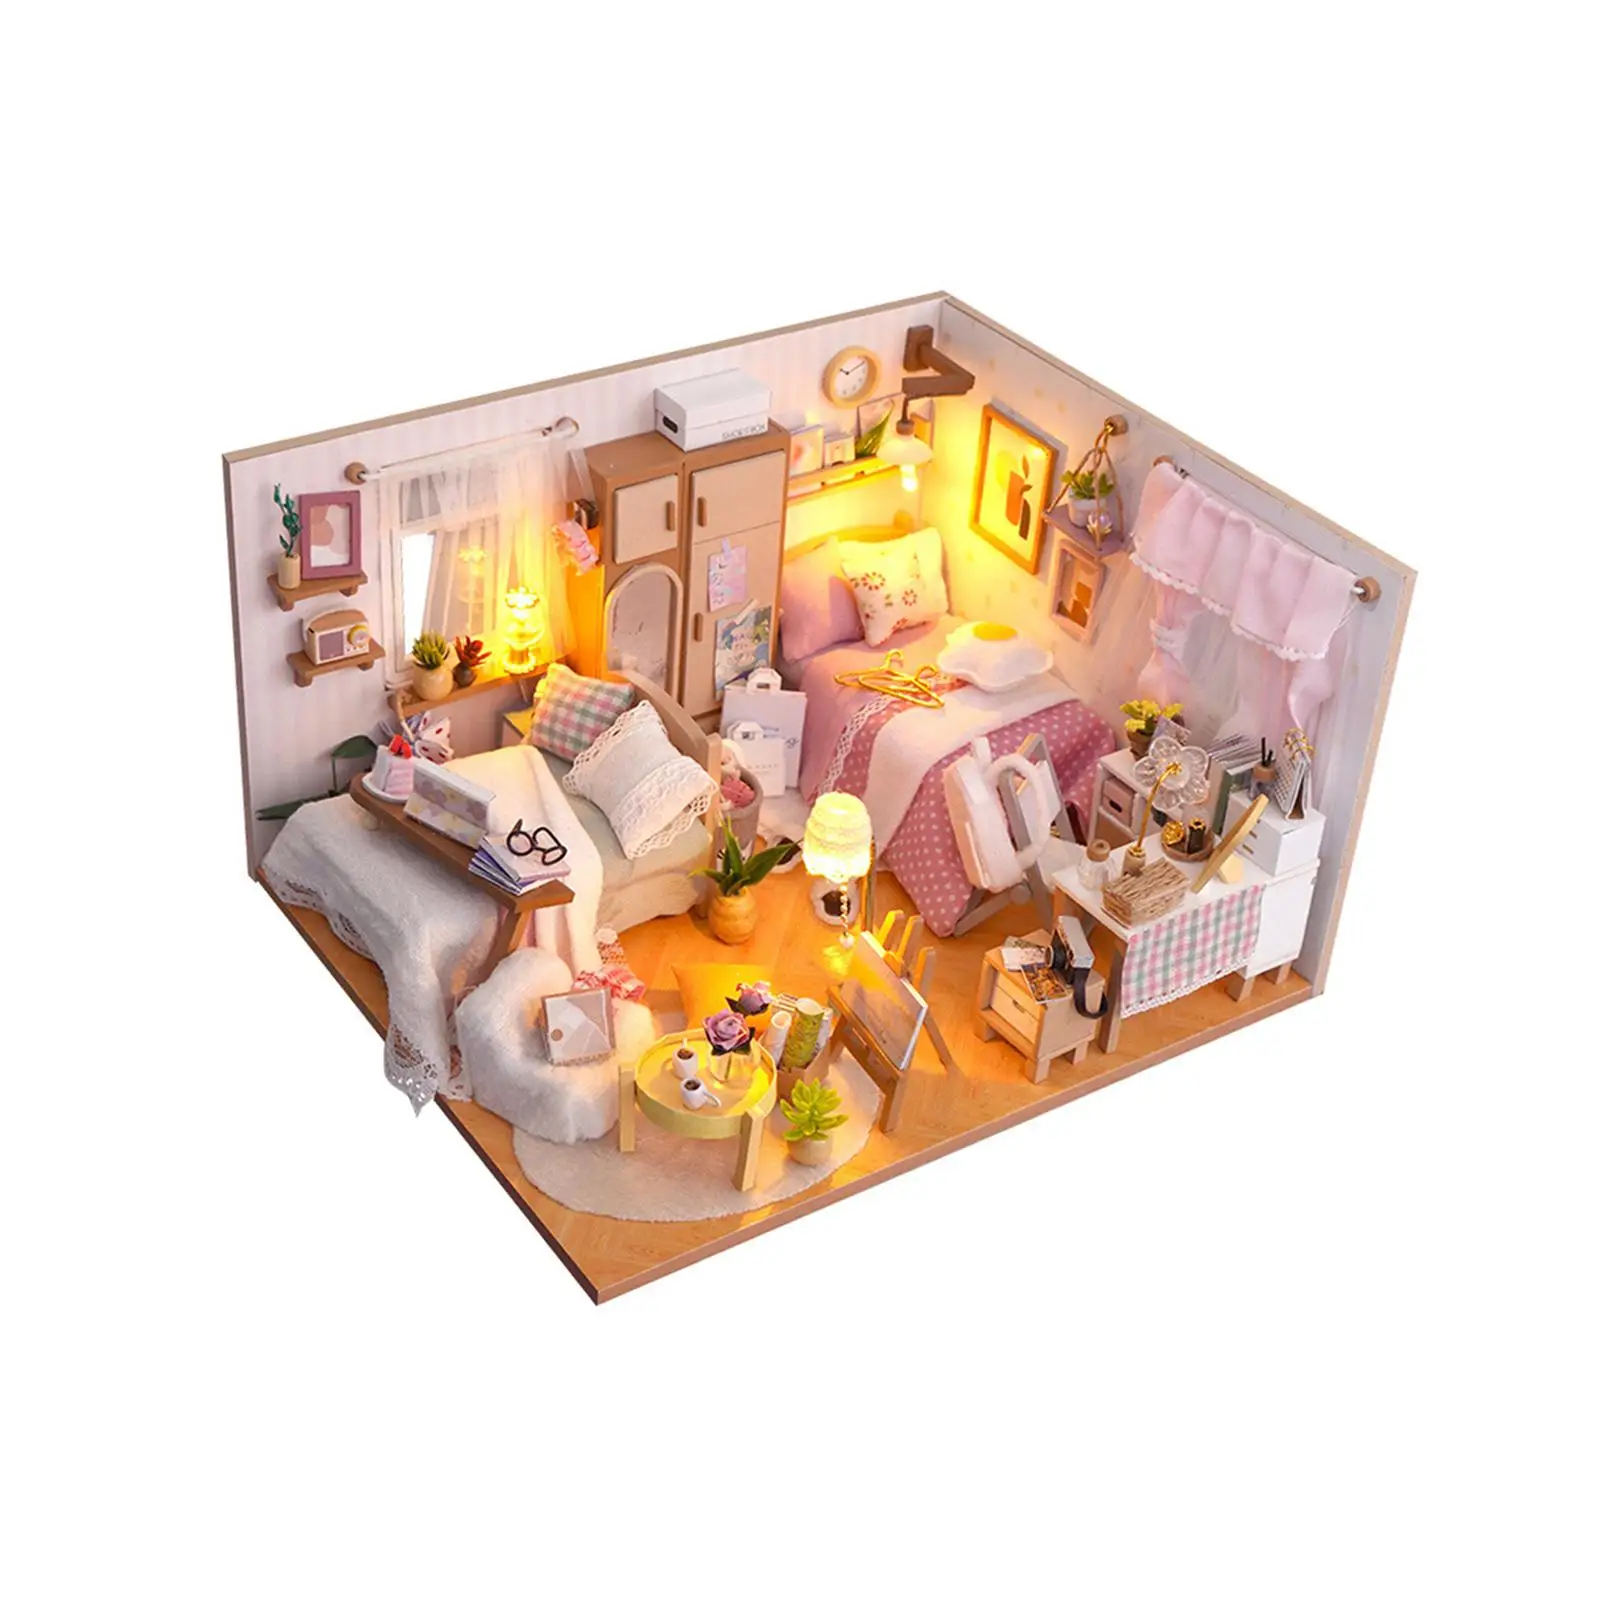 Направи си САМ Миниатюрни Дървени комплекти за куклена къща за деца и възрастни с подсветка е Идеален подарък Развитие на Модерна Играчка стая Кутия Модел куклена къща